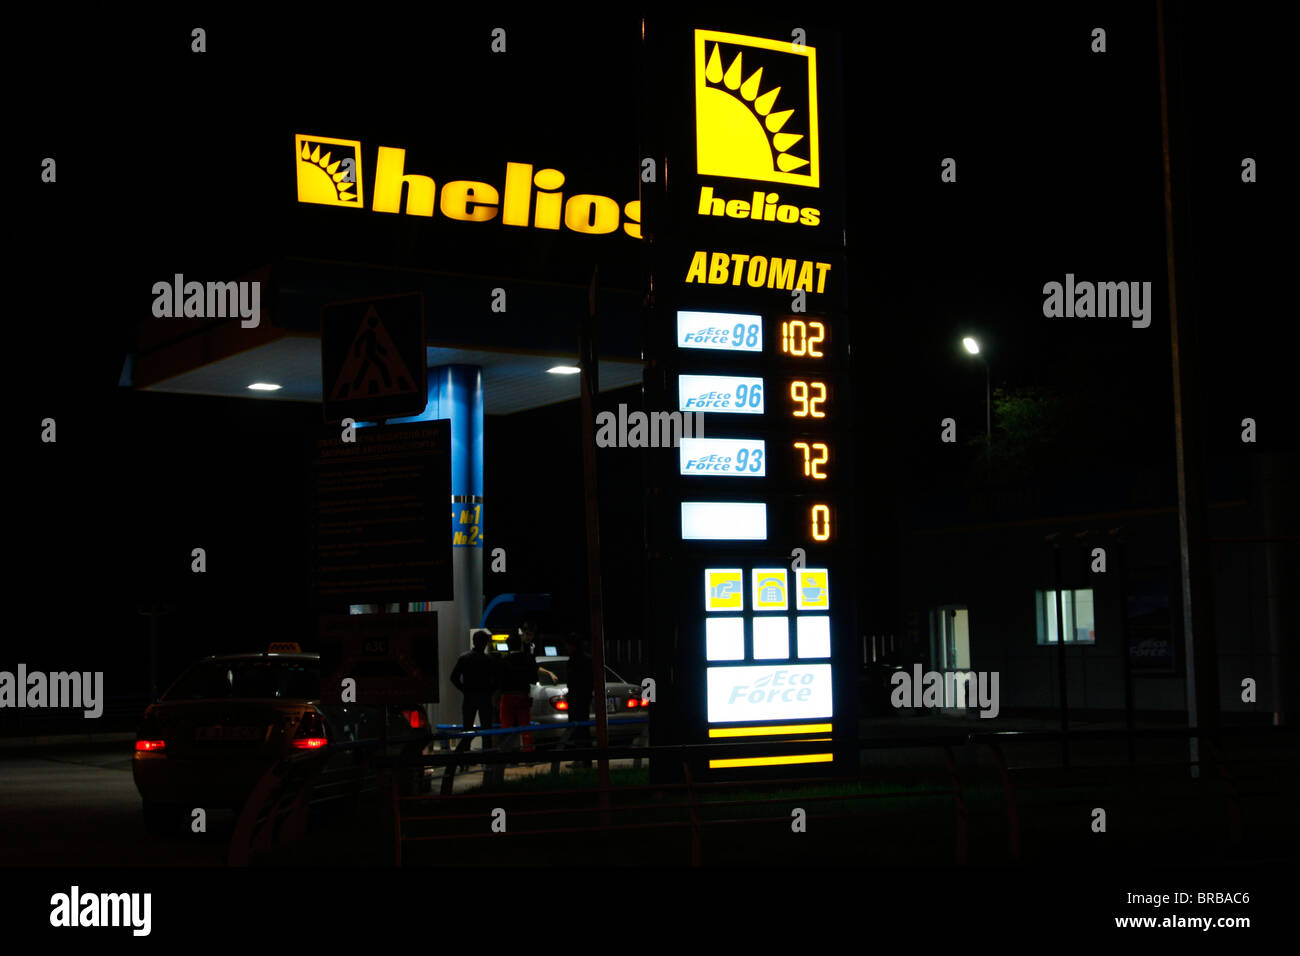 La catena di distributori di benzina Helios, fondata nel 1999, è uno dei più grandi distributori indipendenti di carburante del Kazakistan con circa 270 punti vendita. Foto Stock